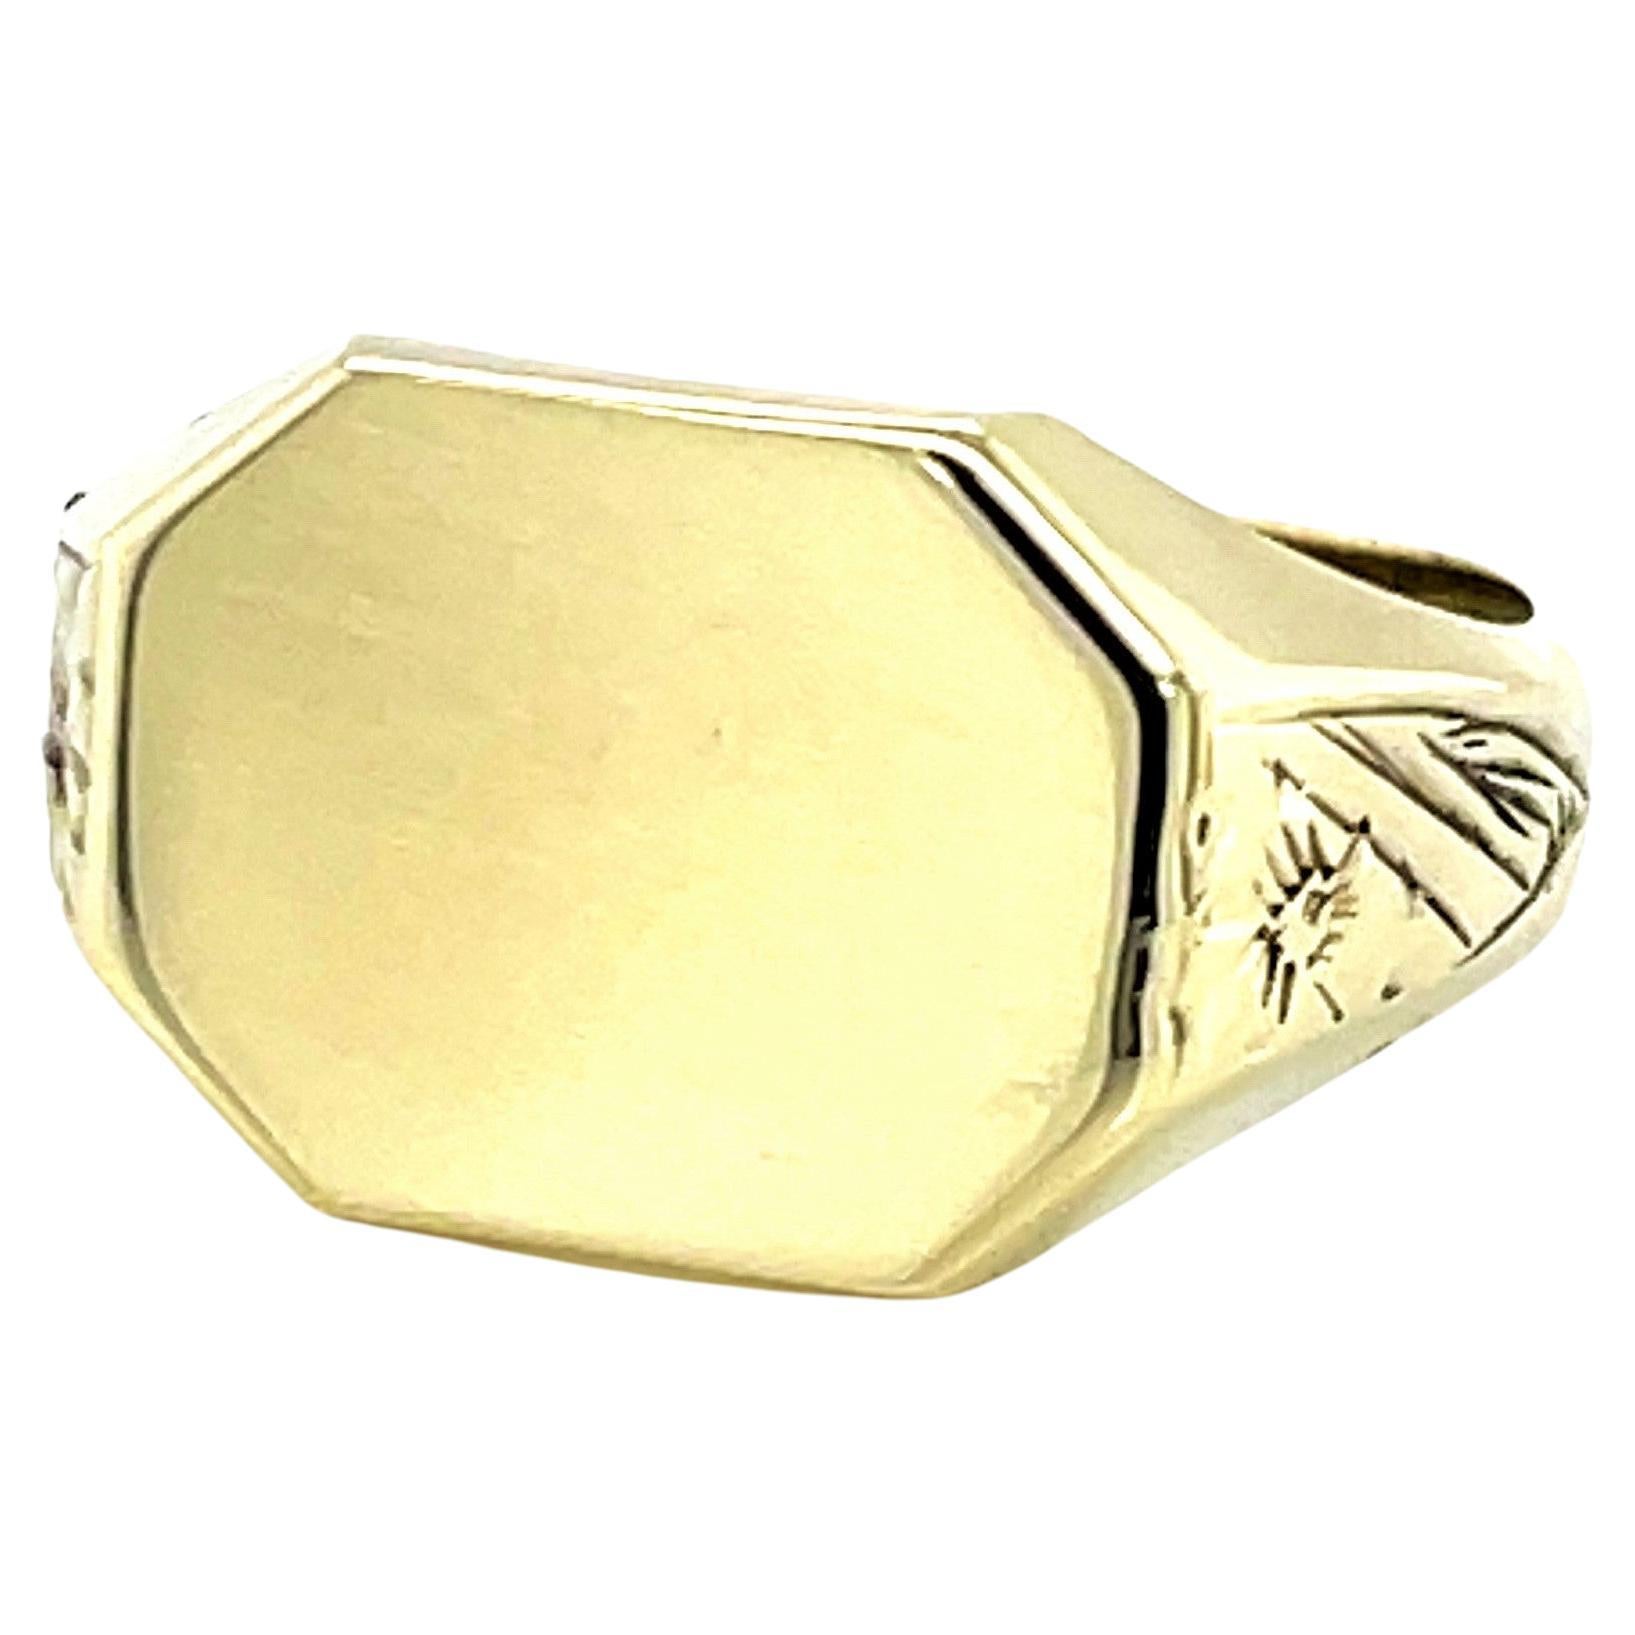 14 Karat Yellow Gold Signet Ring